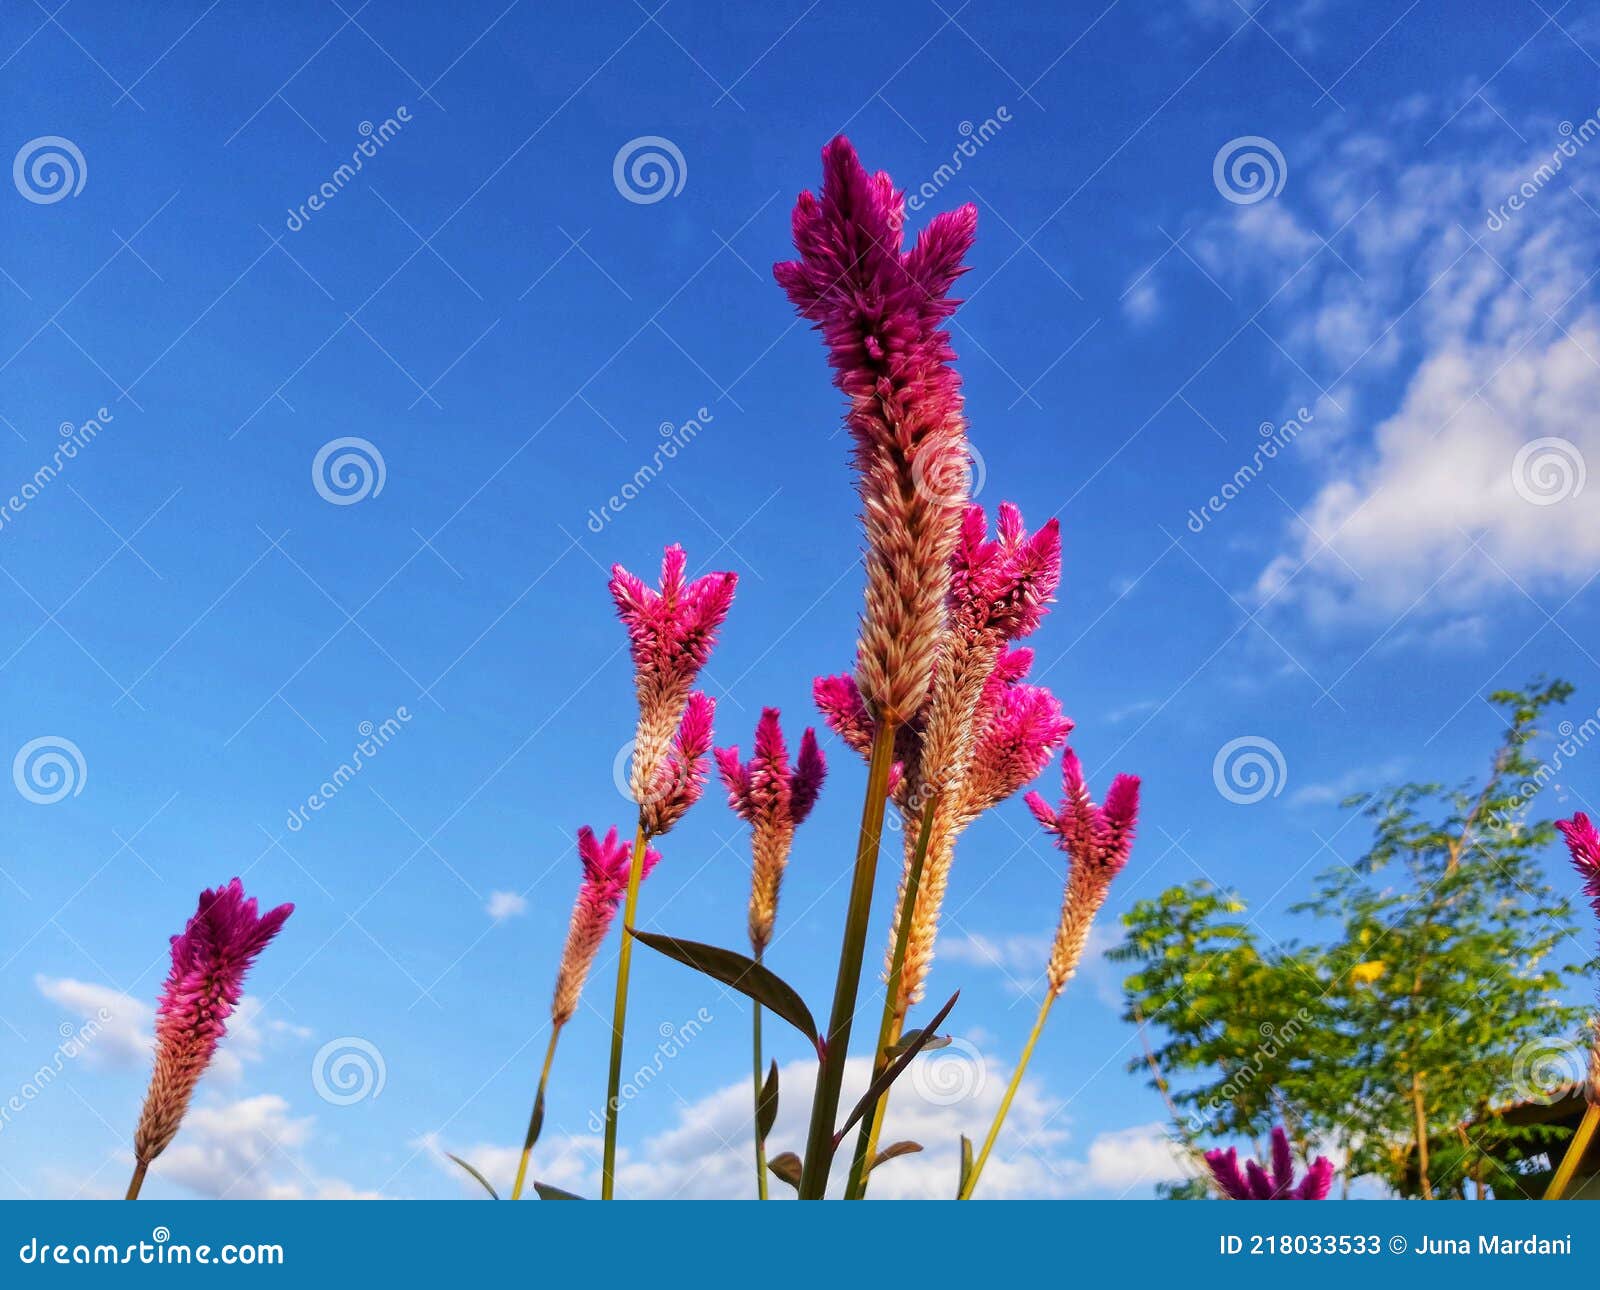 celosia argentea l. or abanico in pota, flores, ntt, indonesia